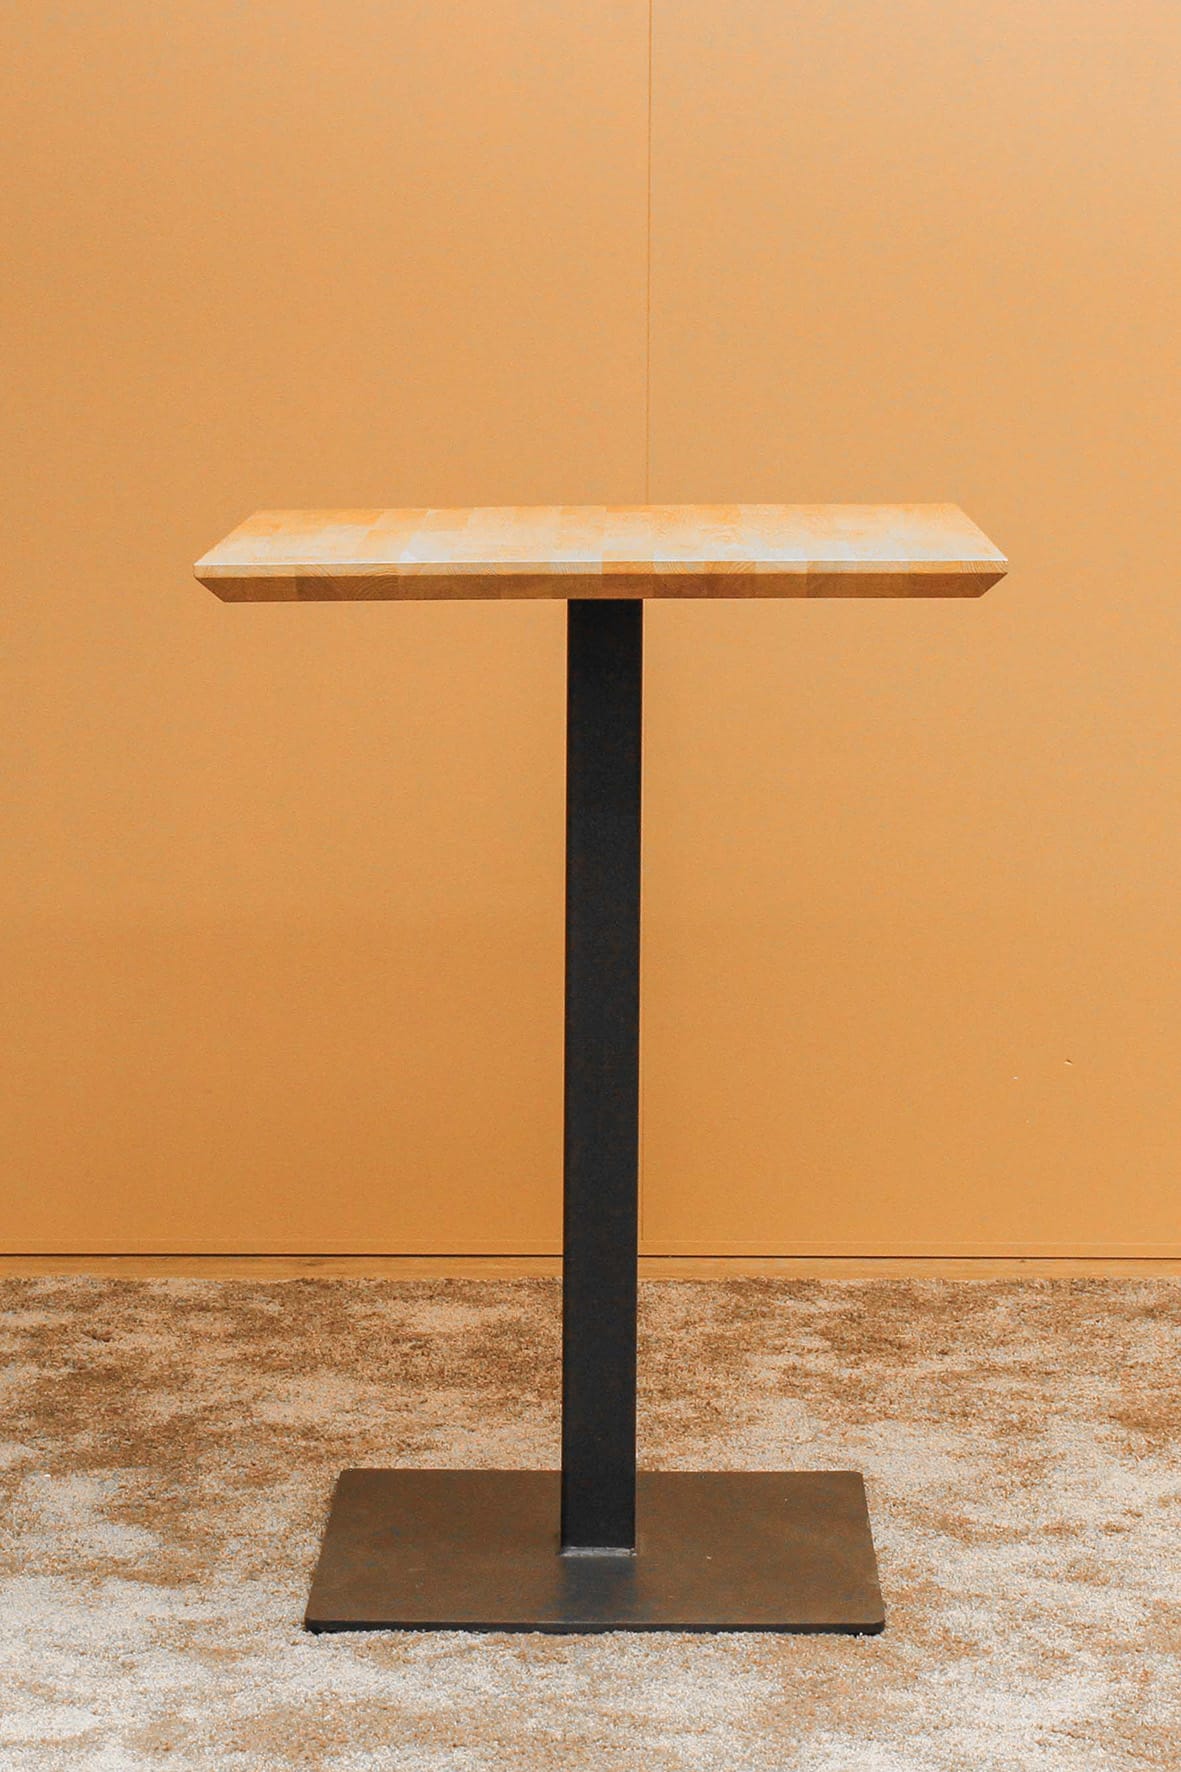 Sitness Urban Tisch Dublin hoch 80 x 80 cm schwarz/Asteiche